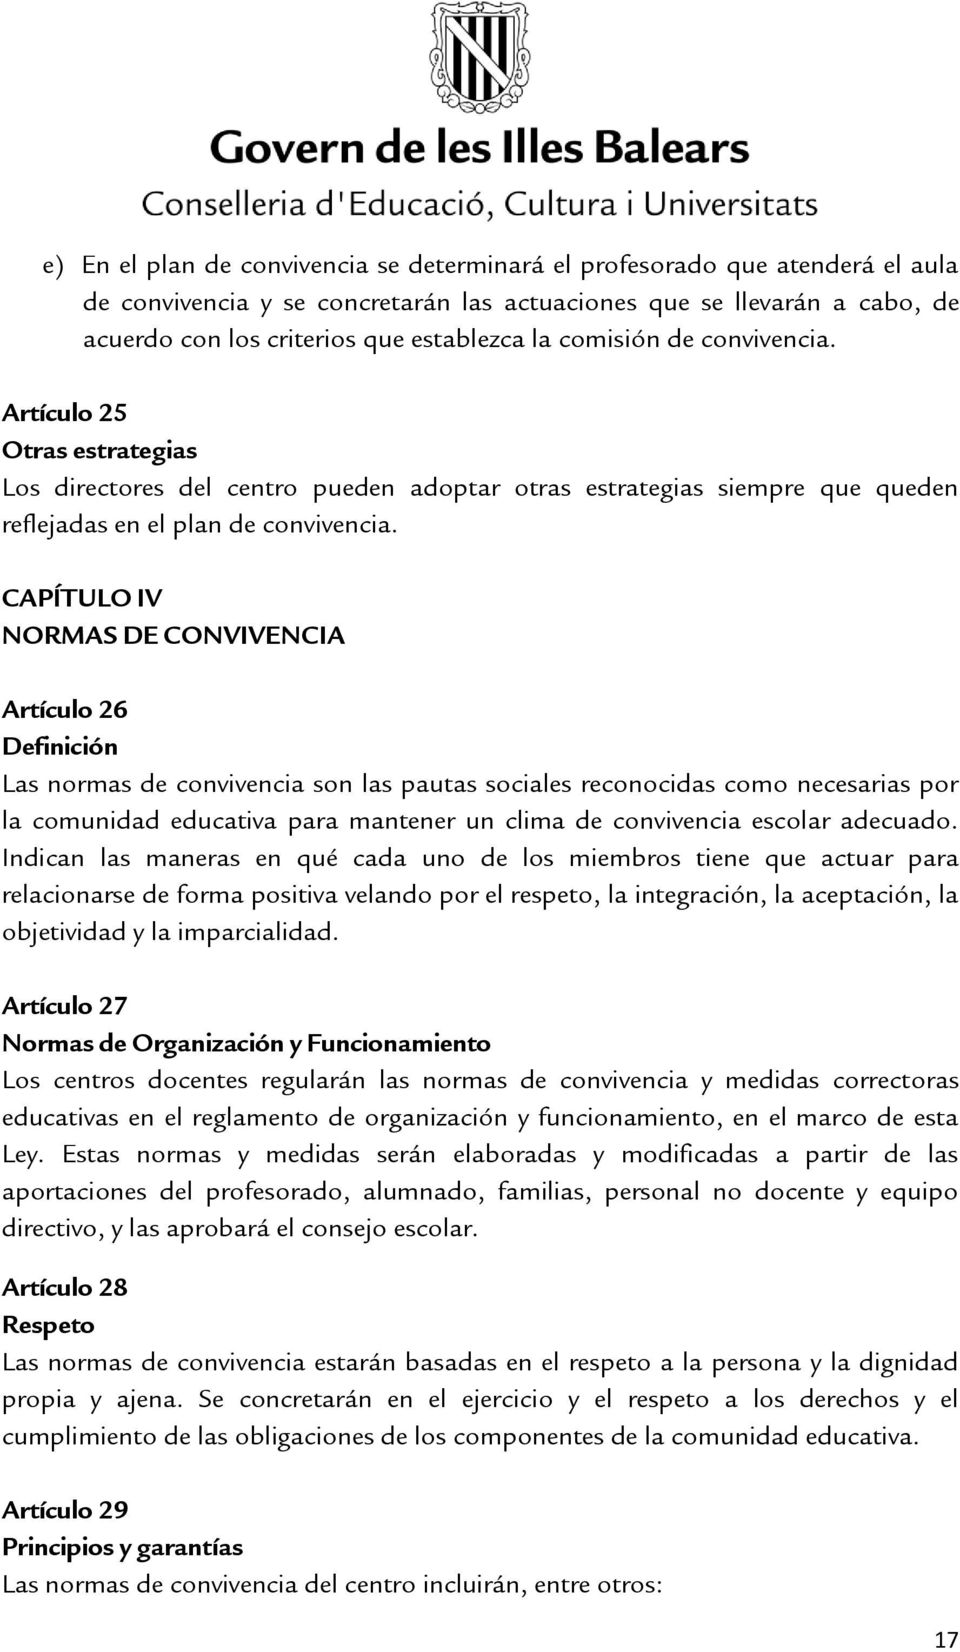 CAPÍTULO IV NORMAS DE CONVIVENCIA Artículo 26 Definición Las normas de convivencia son las pautas sociales reconocidas como necesarias por la comunidad educativa para mantener un clima de convivencia